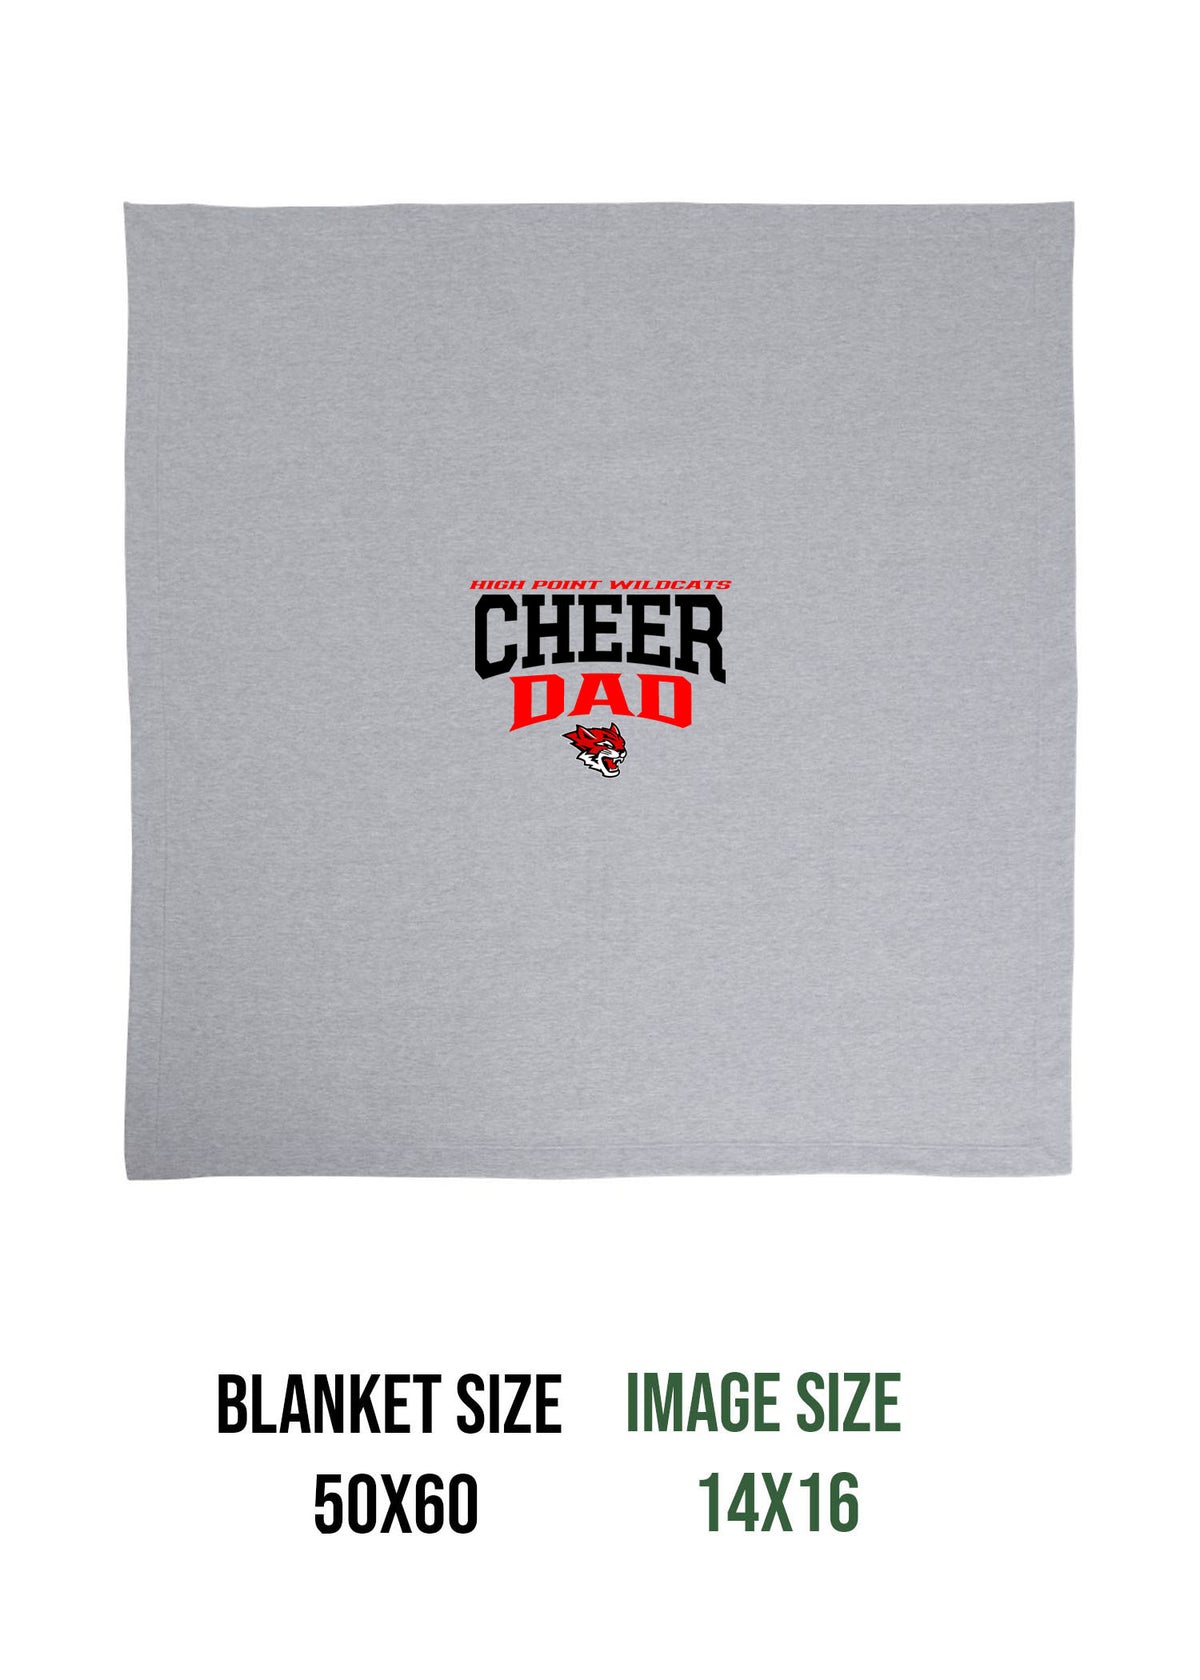 Wildcats Cheer Design 6 Blanket